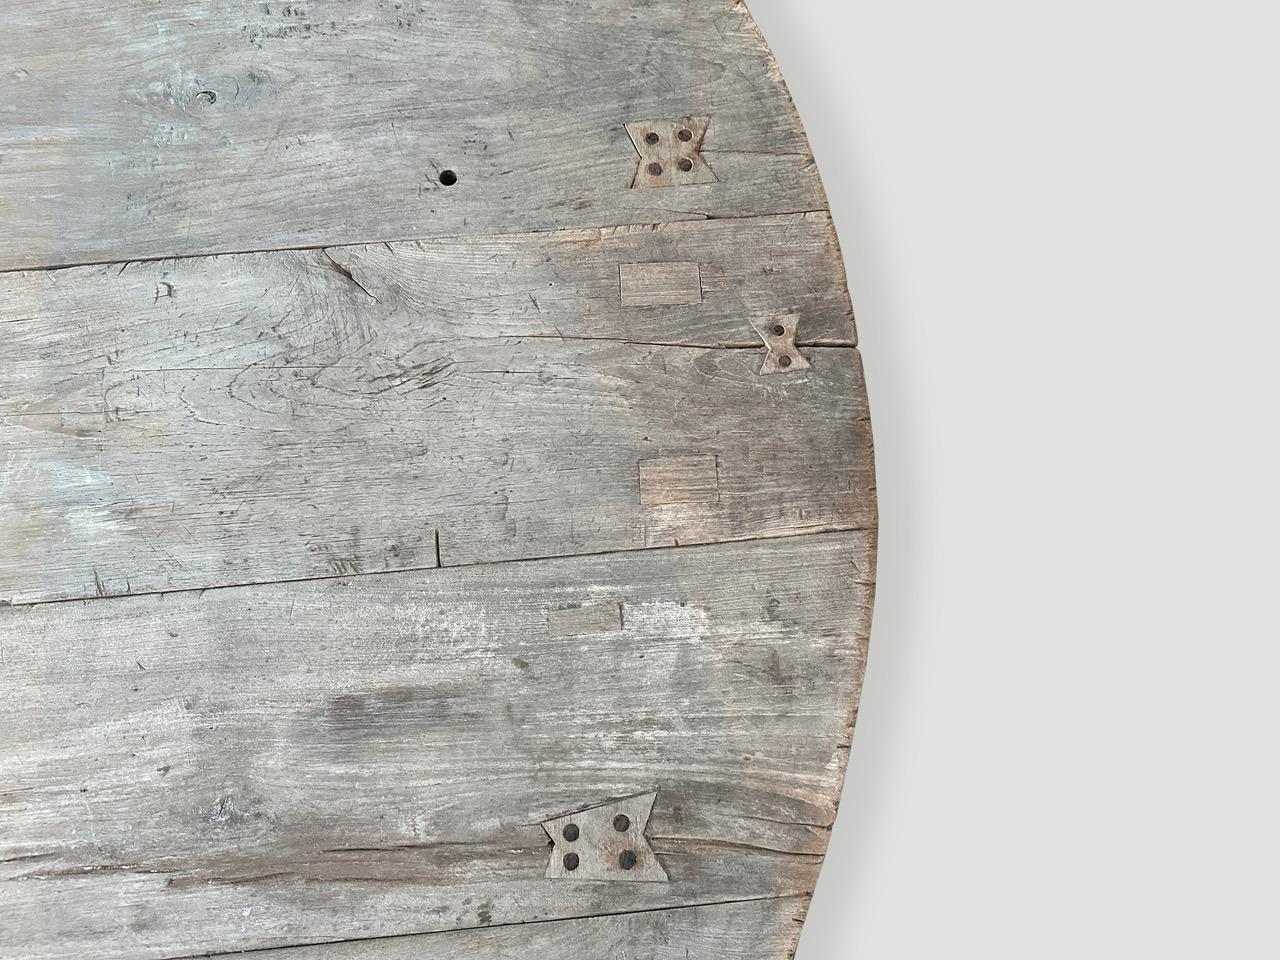 Wunderschöne antike Teakholzplatten mit schöner Patina und weichen, abgerundeten Kanten sind zu diesem fabelhaften runden Couchtisch zusammengefügt. Als Kontrast dazu haben wir in das Holz eingelegte Schmetterlinge und einen glatten Teakholzsockel